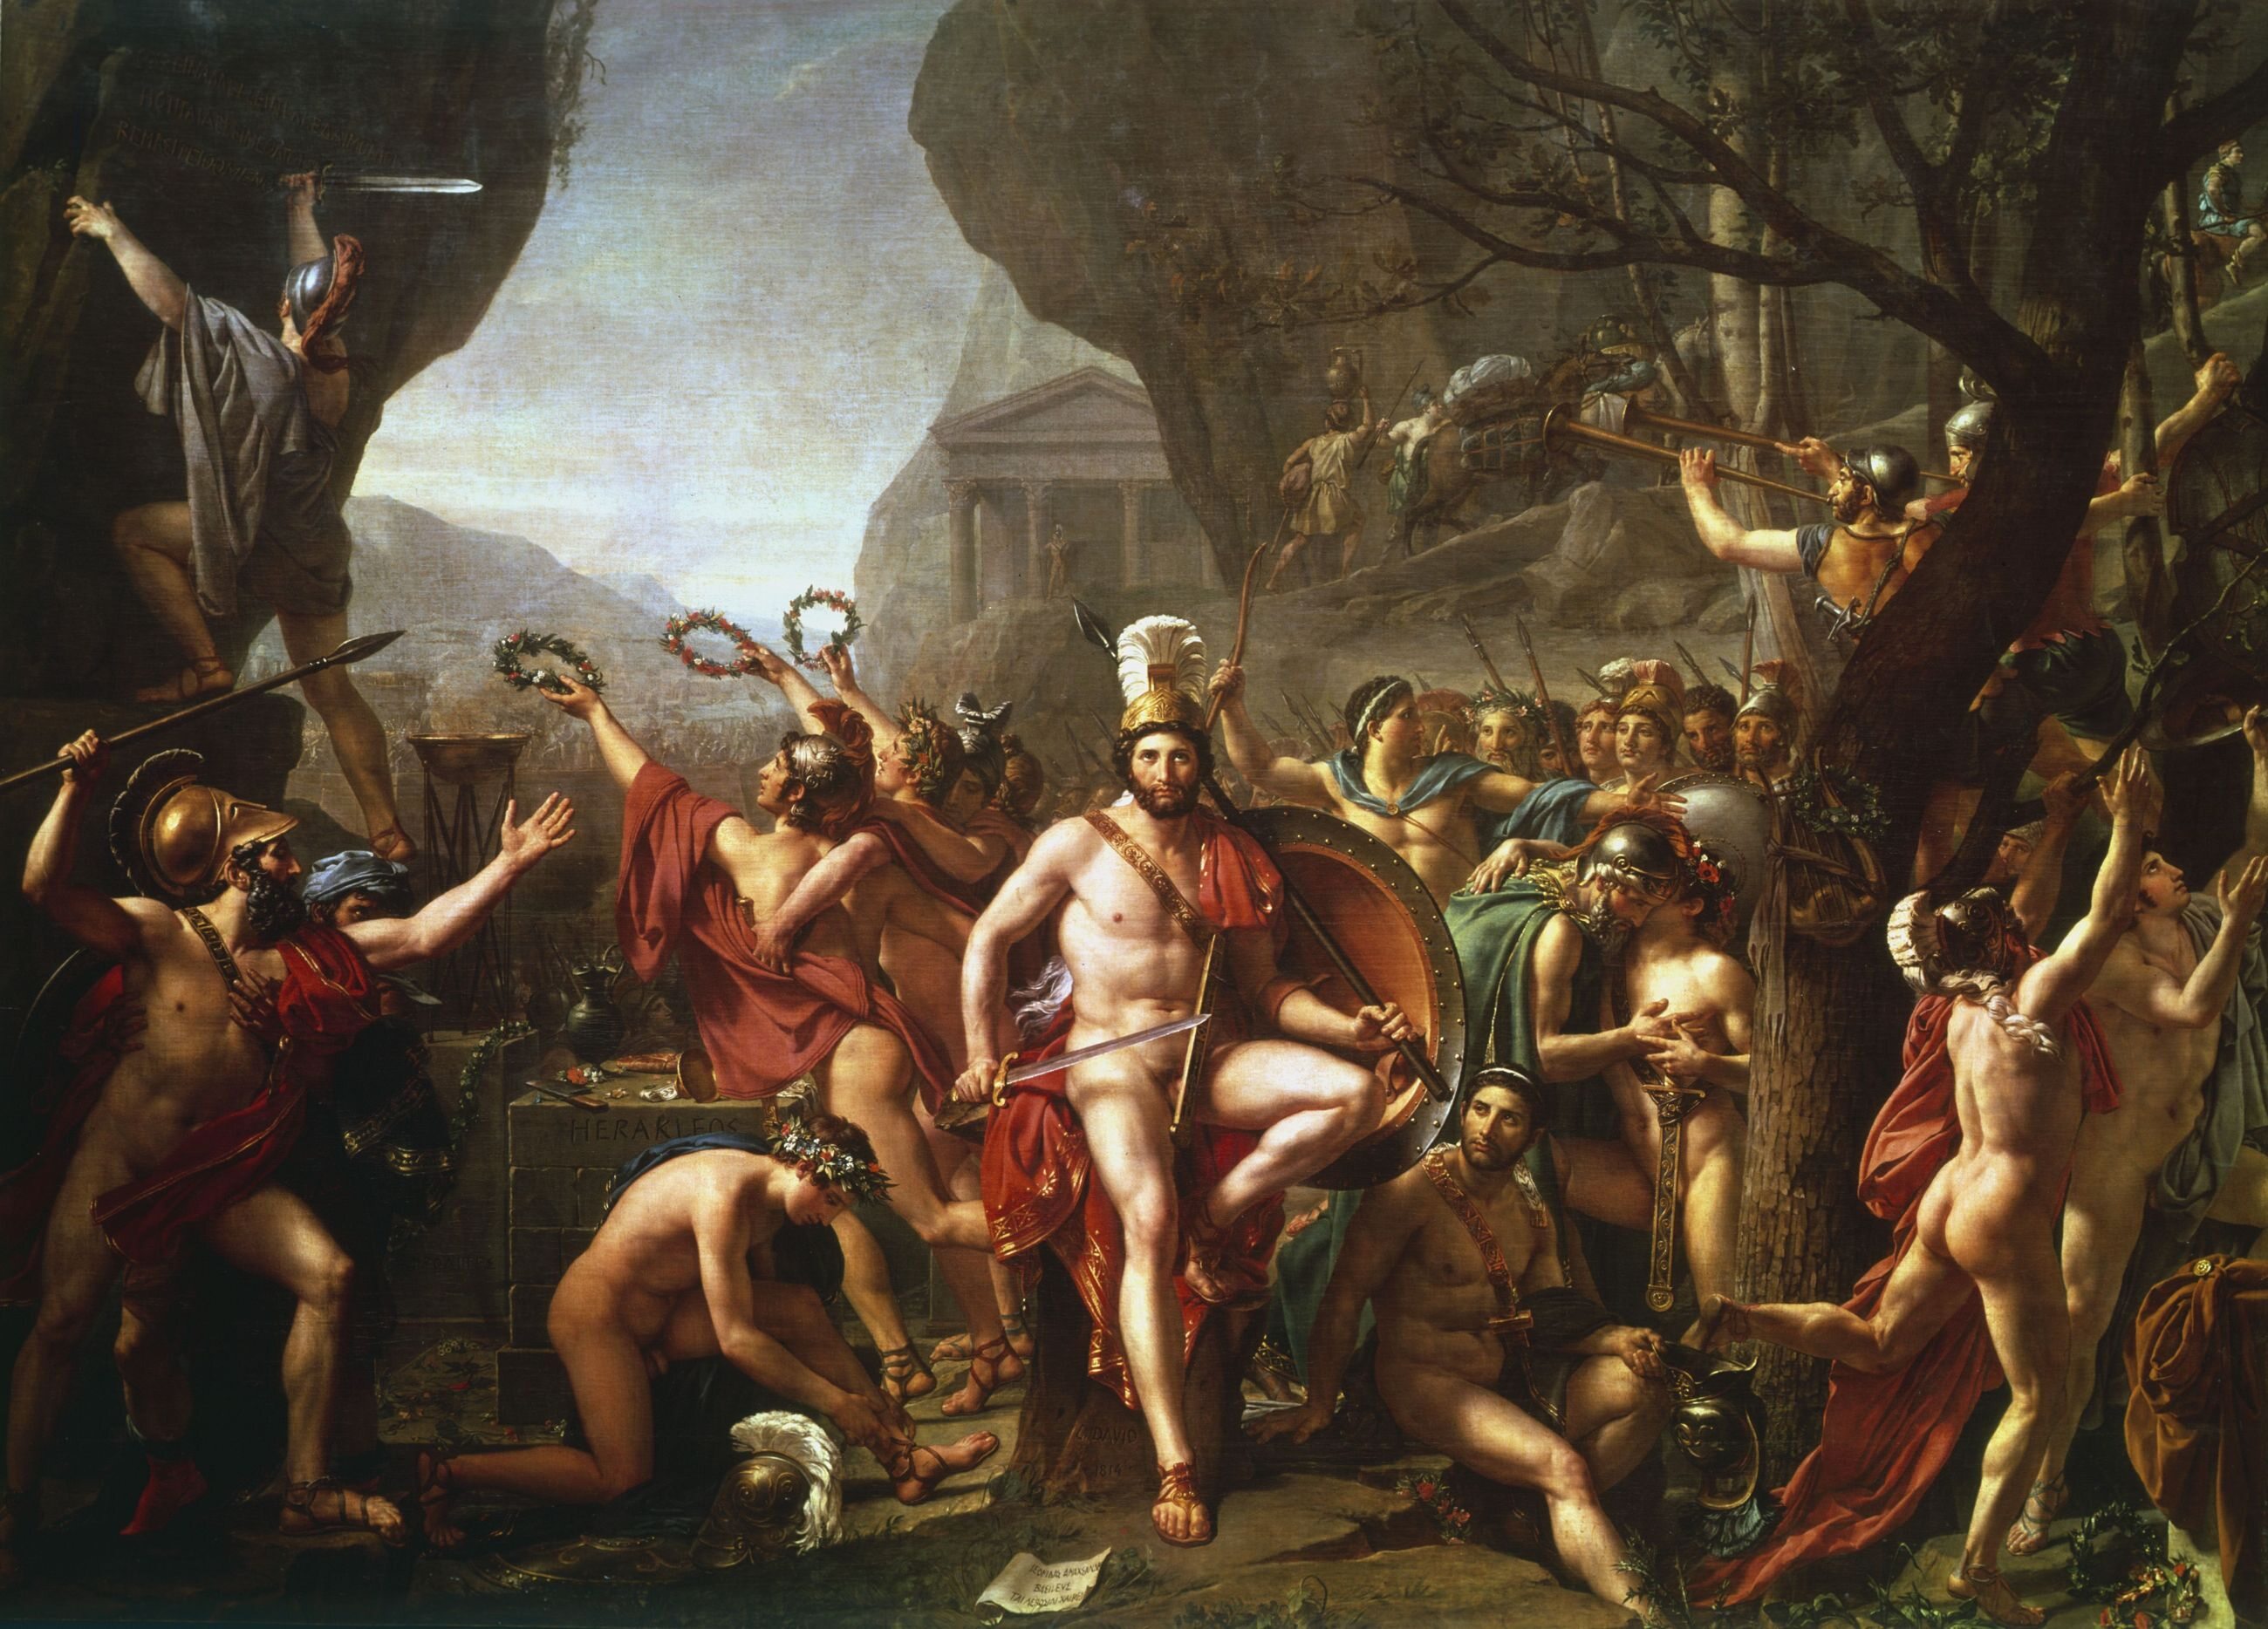 Leonidas dowodził pod Termopilami (480 p.n.e.) wojskami Spartan. Kto był jego przeciwnikiem?